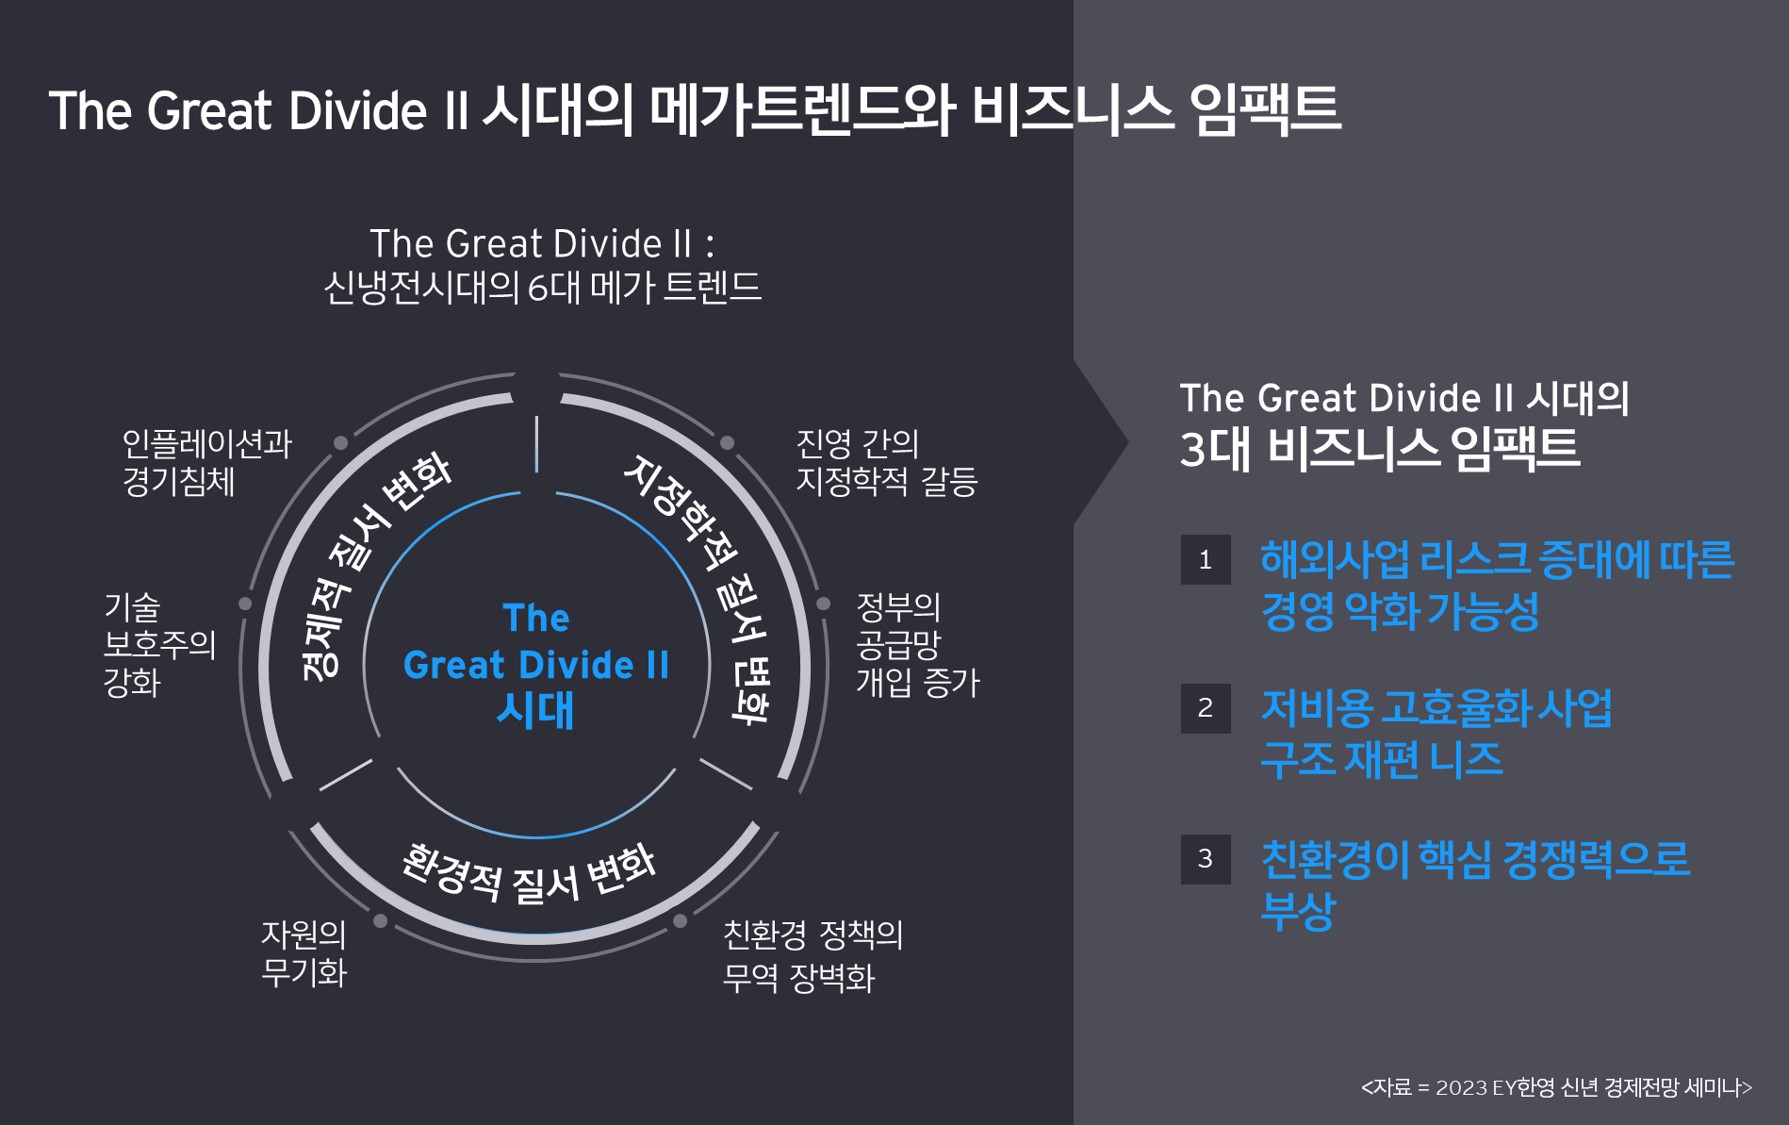 kr-ey-the-graet-divide-II-part-1-infographic.jpg